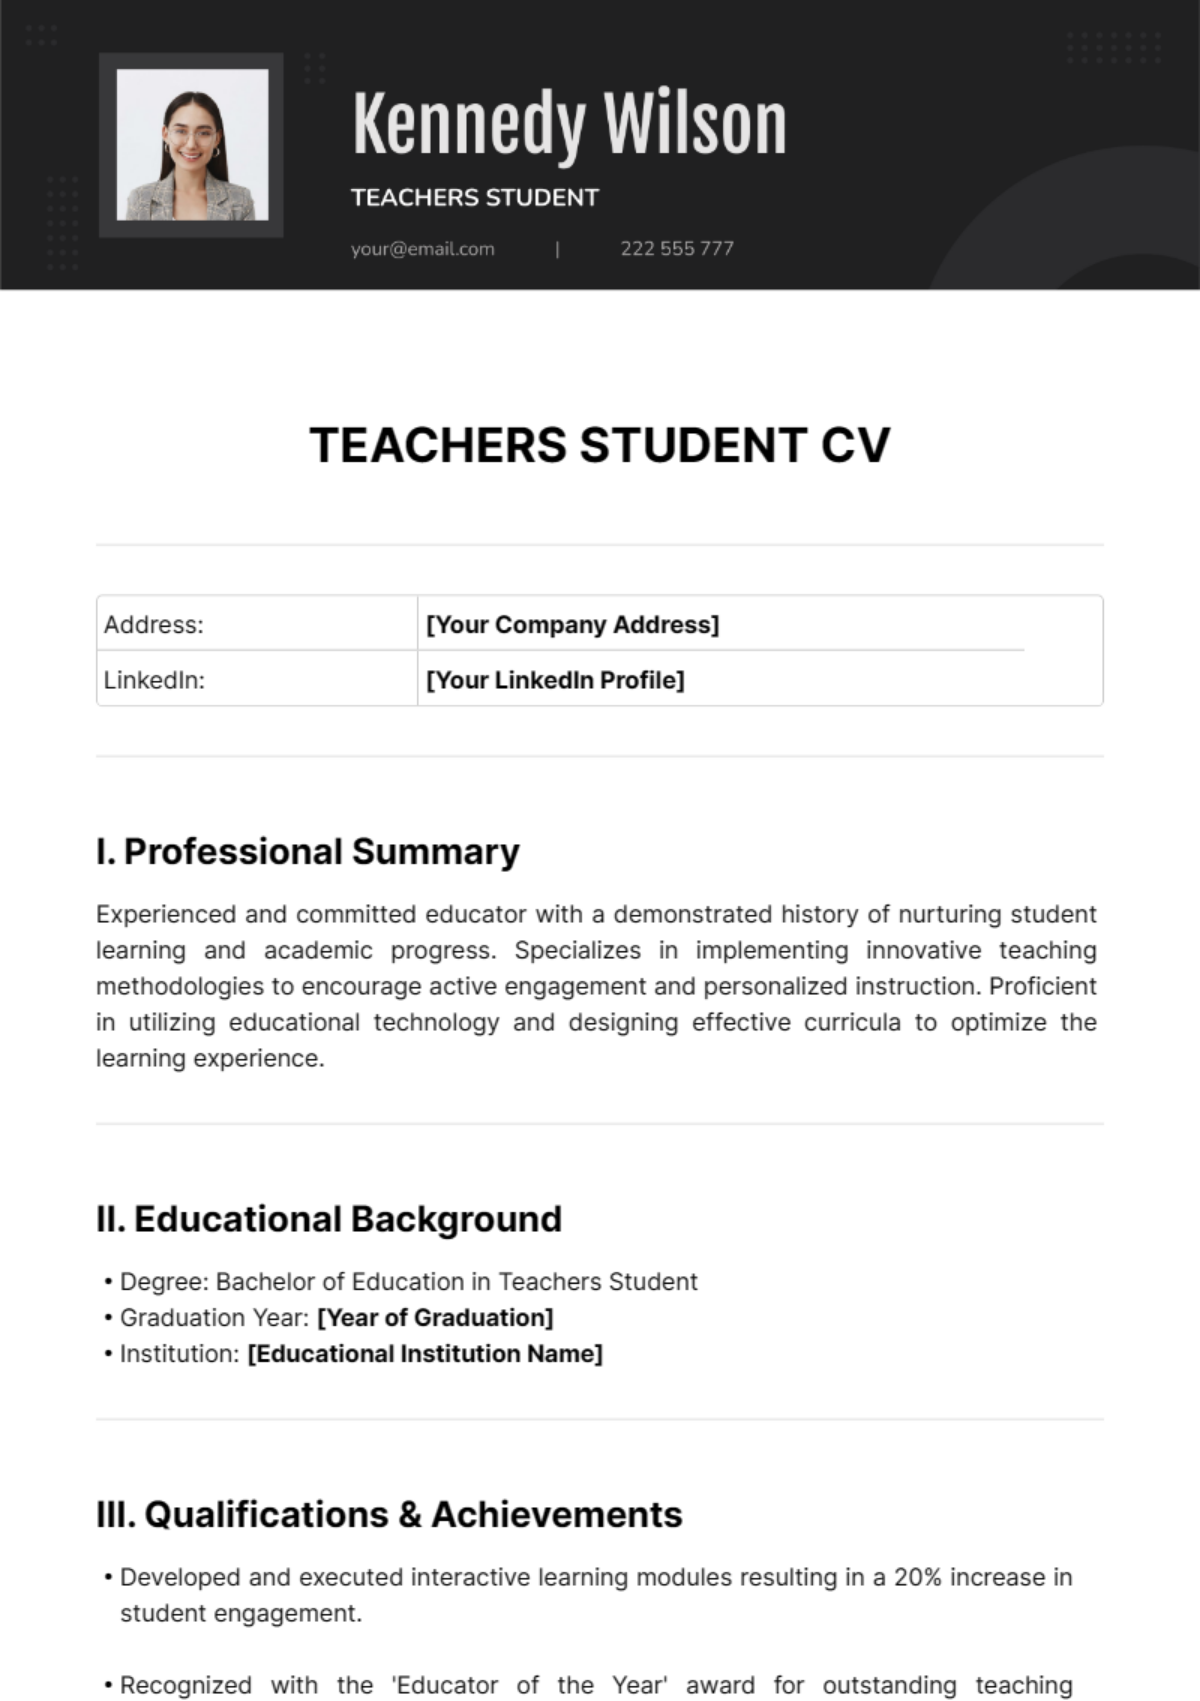 Teachers Student CV Template